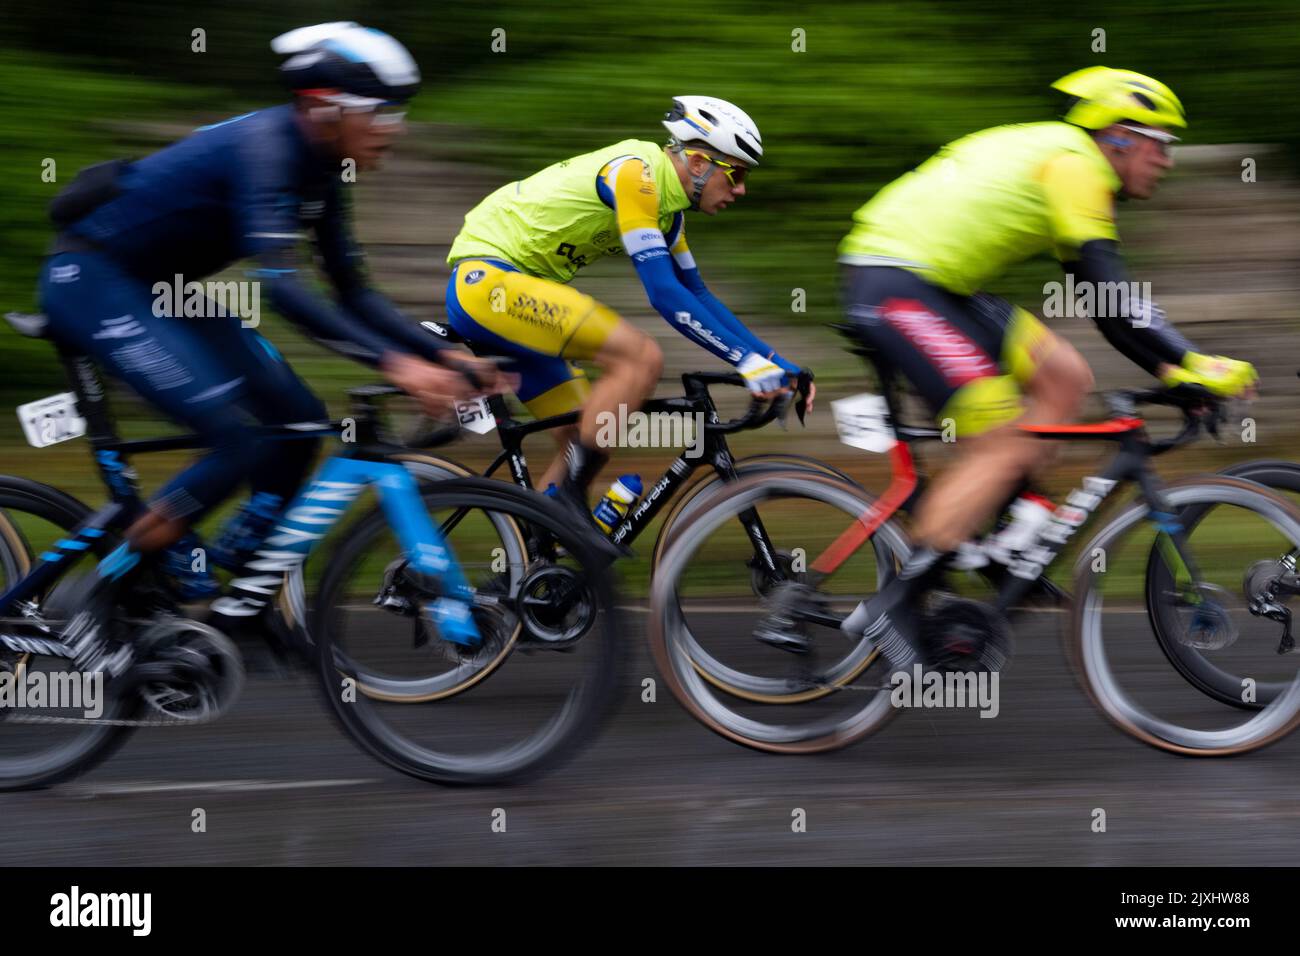 Kenneth Van Rooy - l'équipe de cyclisme sur route Sport Vlaanderen-Baloise - lors de la première étape du Tour de Grande-Bretagne 2022 - Aberdeen, Écosse, Royaume-Uni Banque D'Images